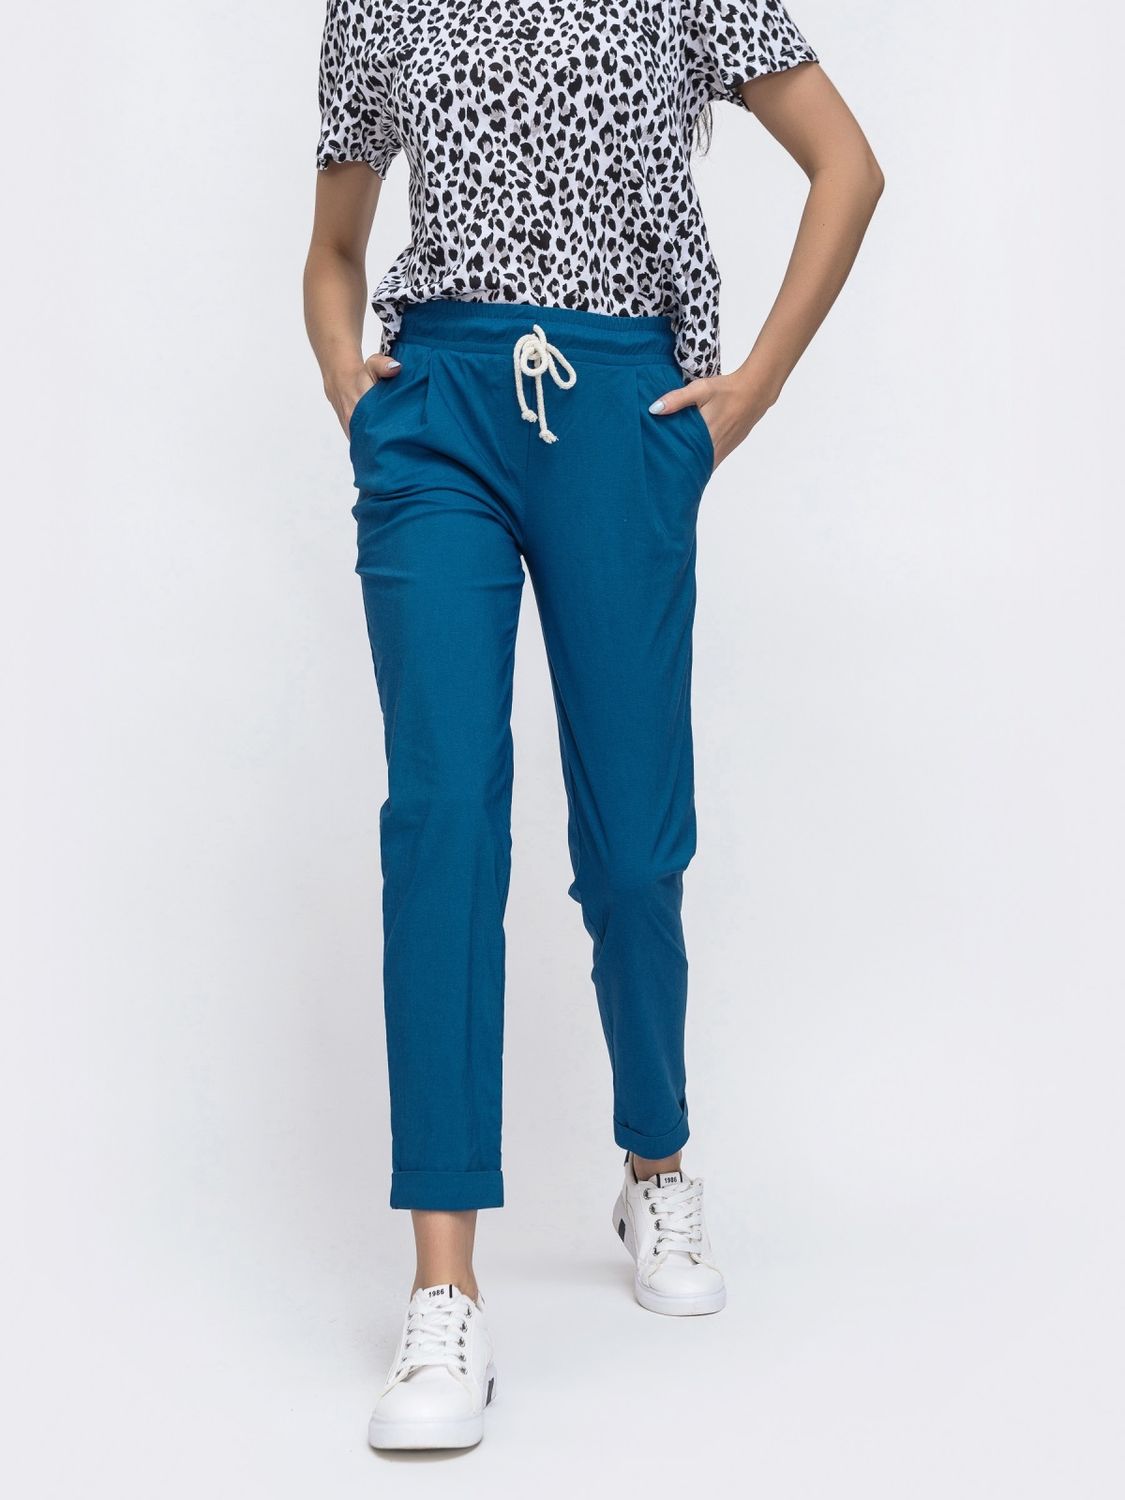 Укороченные летние брюки зауженного кроя синие - фото